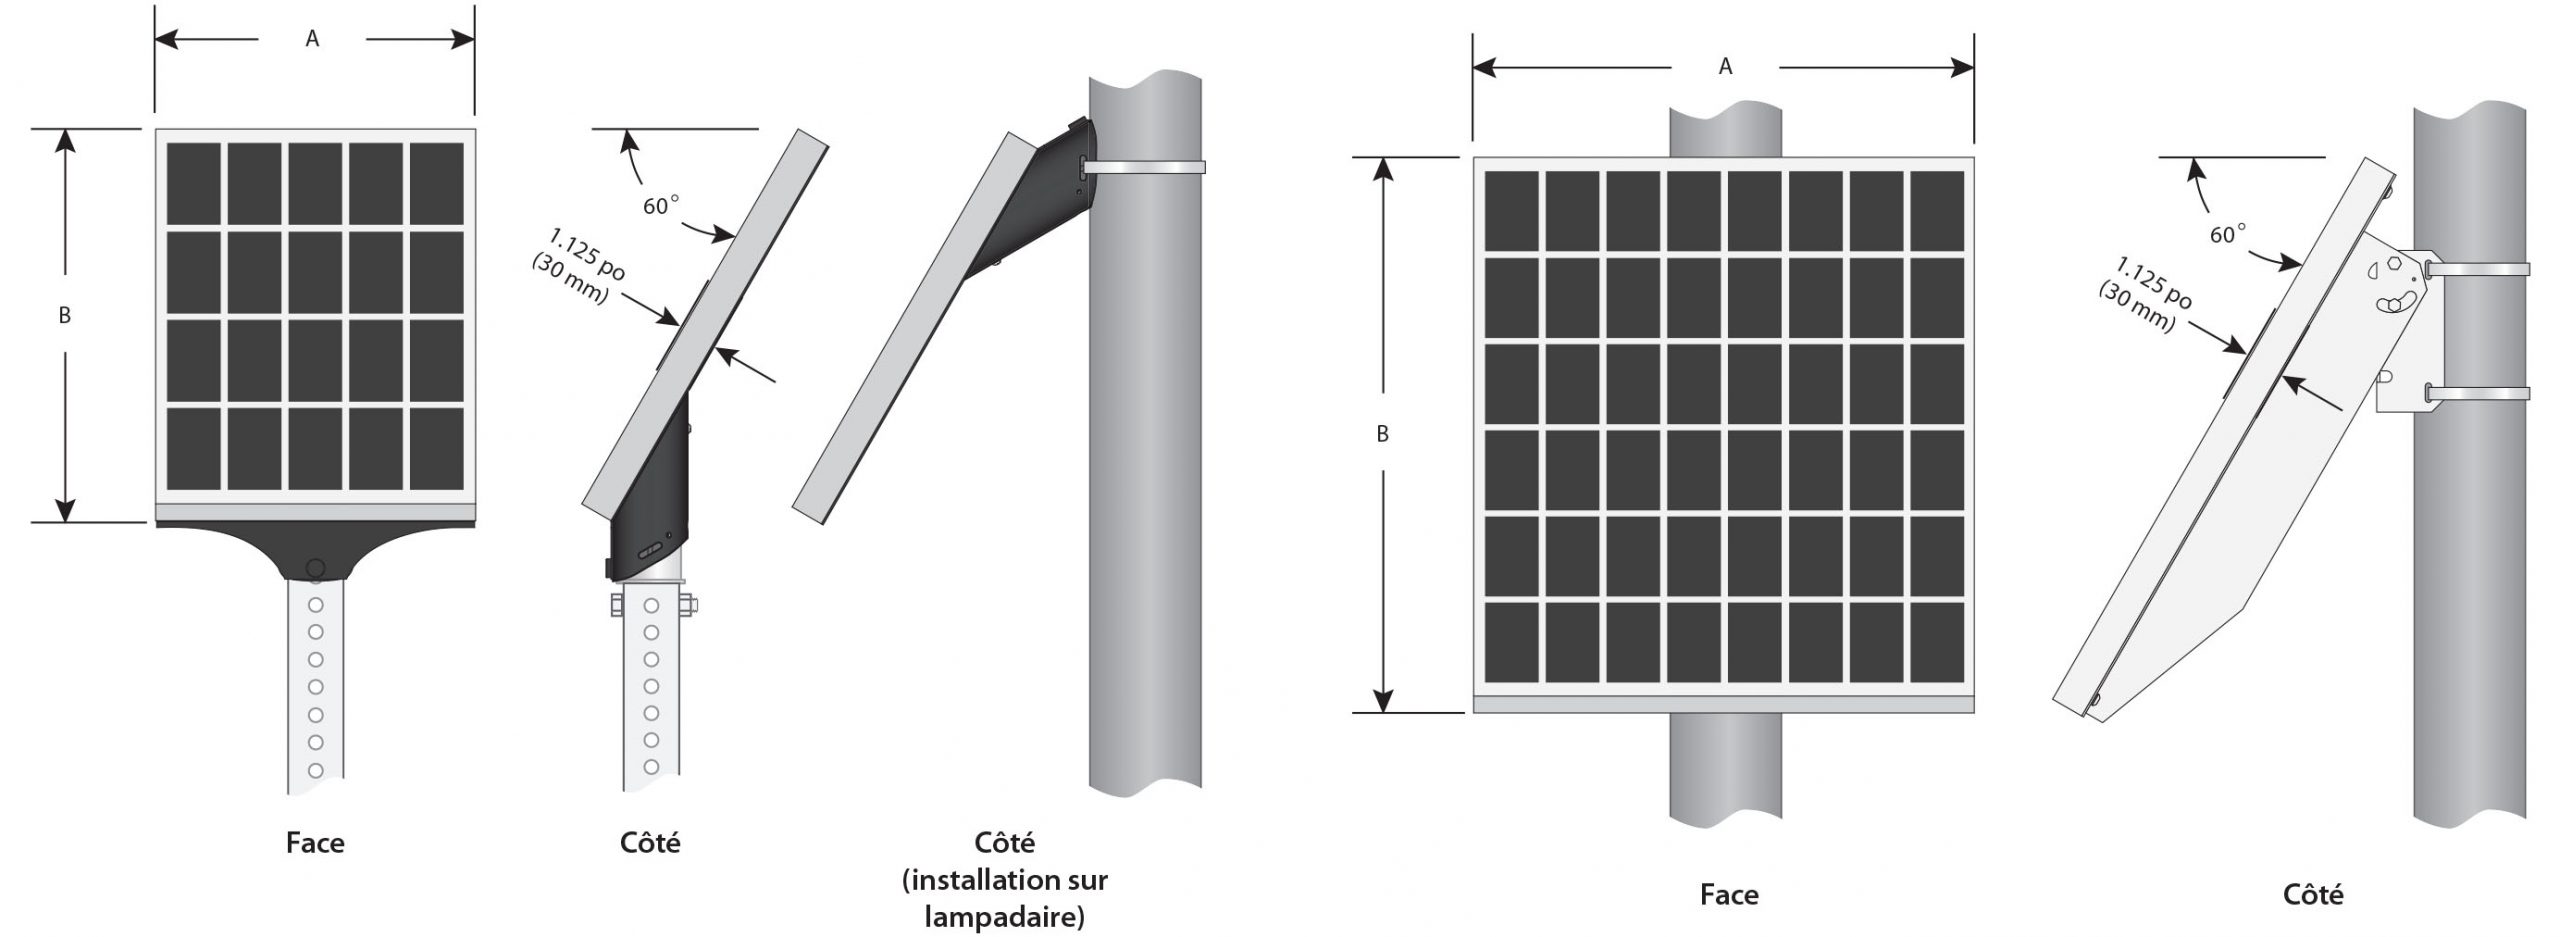 Spécifications techniques du panneau solaire tout-en-un - Afficheur solaire - Panneau afficheur de vitesse - Trafic Innovation